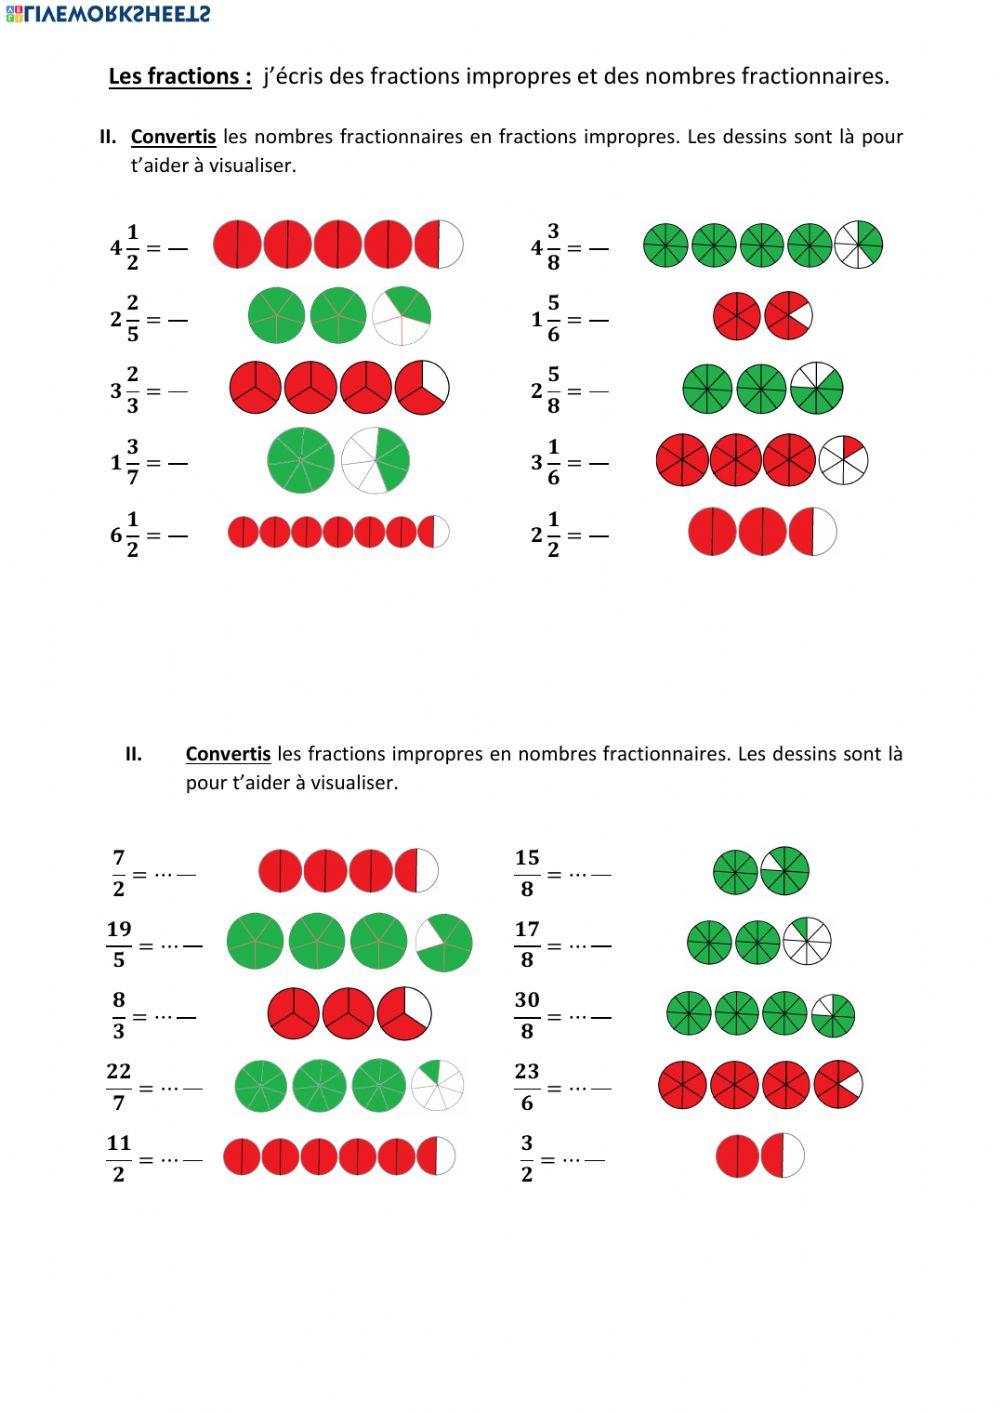 Les fractions impropres et les nombres fractionnaires (représentation)